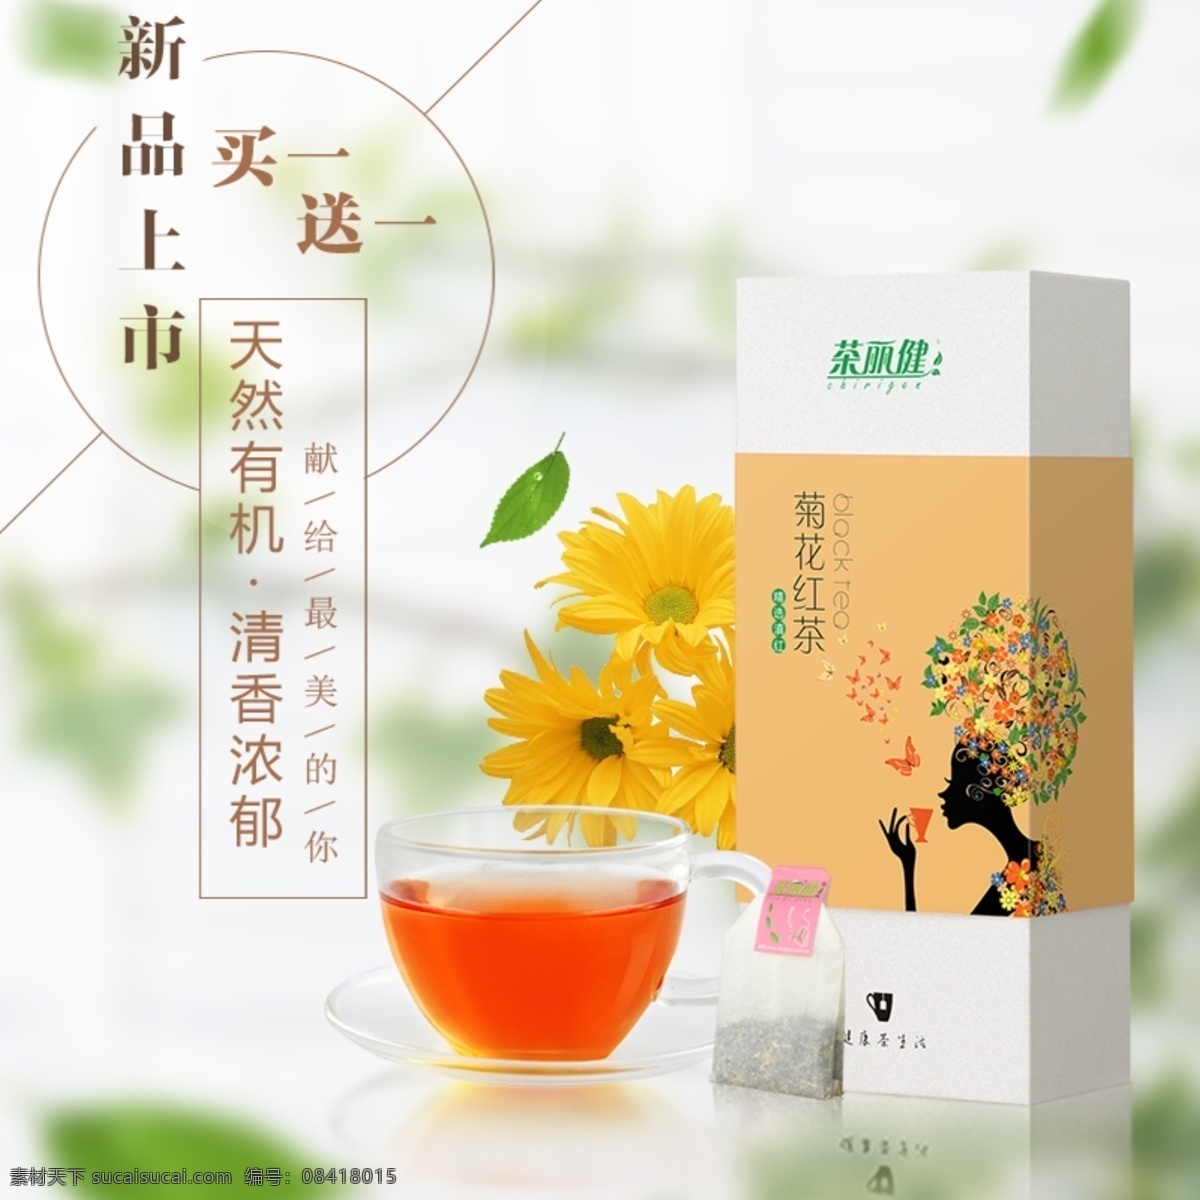 淘宝 红茶 主 图 菊花红茶 茶丽健 新品上市 茶叶 广告 海报